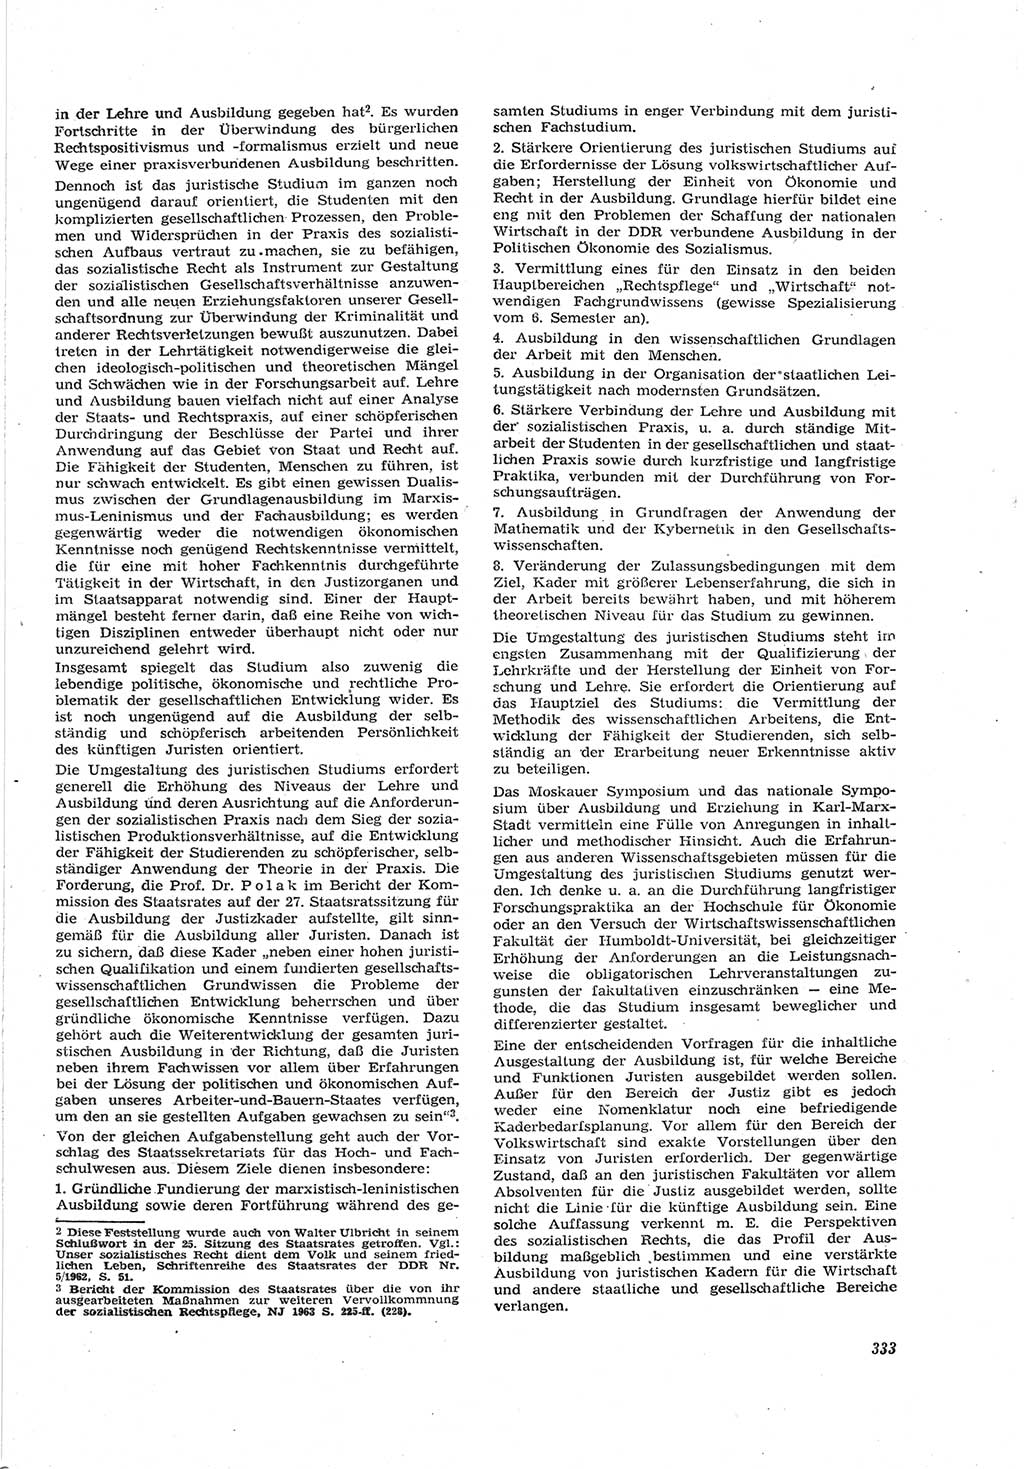 Neue Justiz (NJ), Zeitschrift für Recht und Rechtswissenschaft [Deutsche Demokratische Republik (DDR)], 17. Jahrgang 1963, Seite 333 (NJ DDR 1963, S. 333)